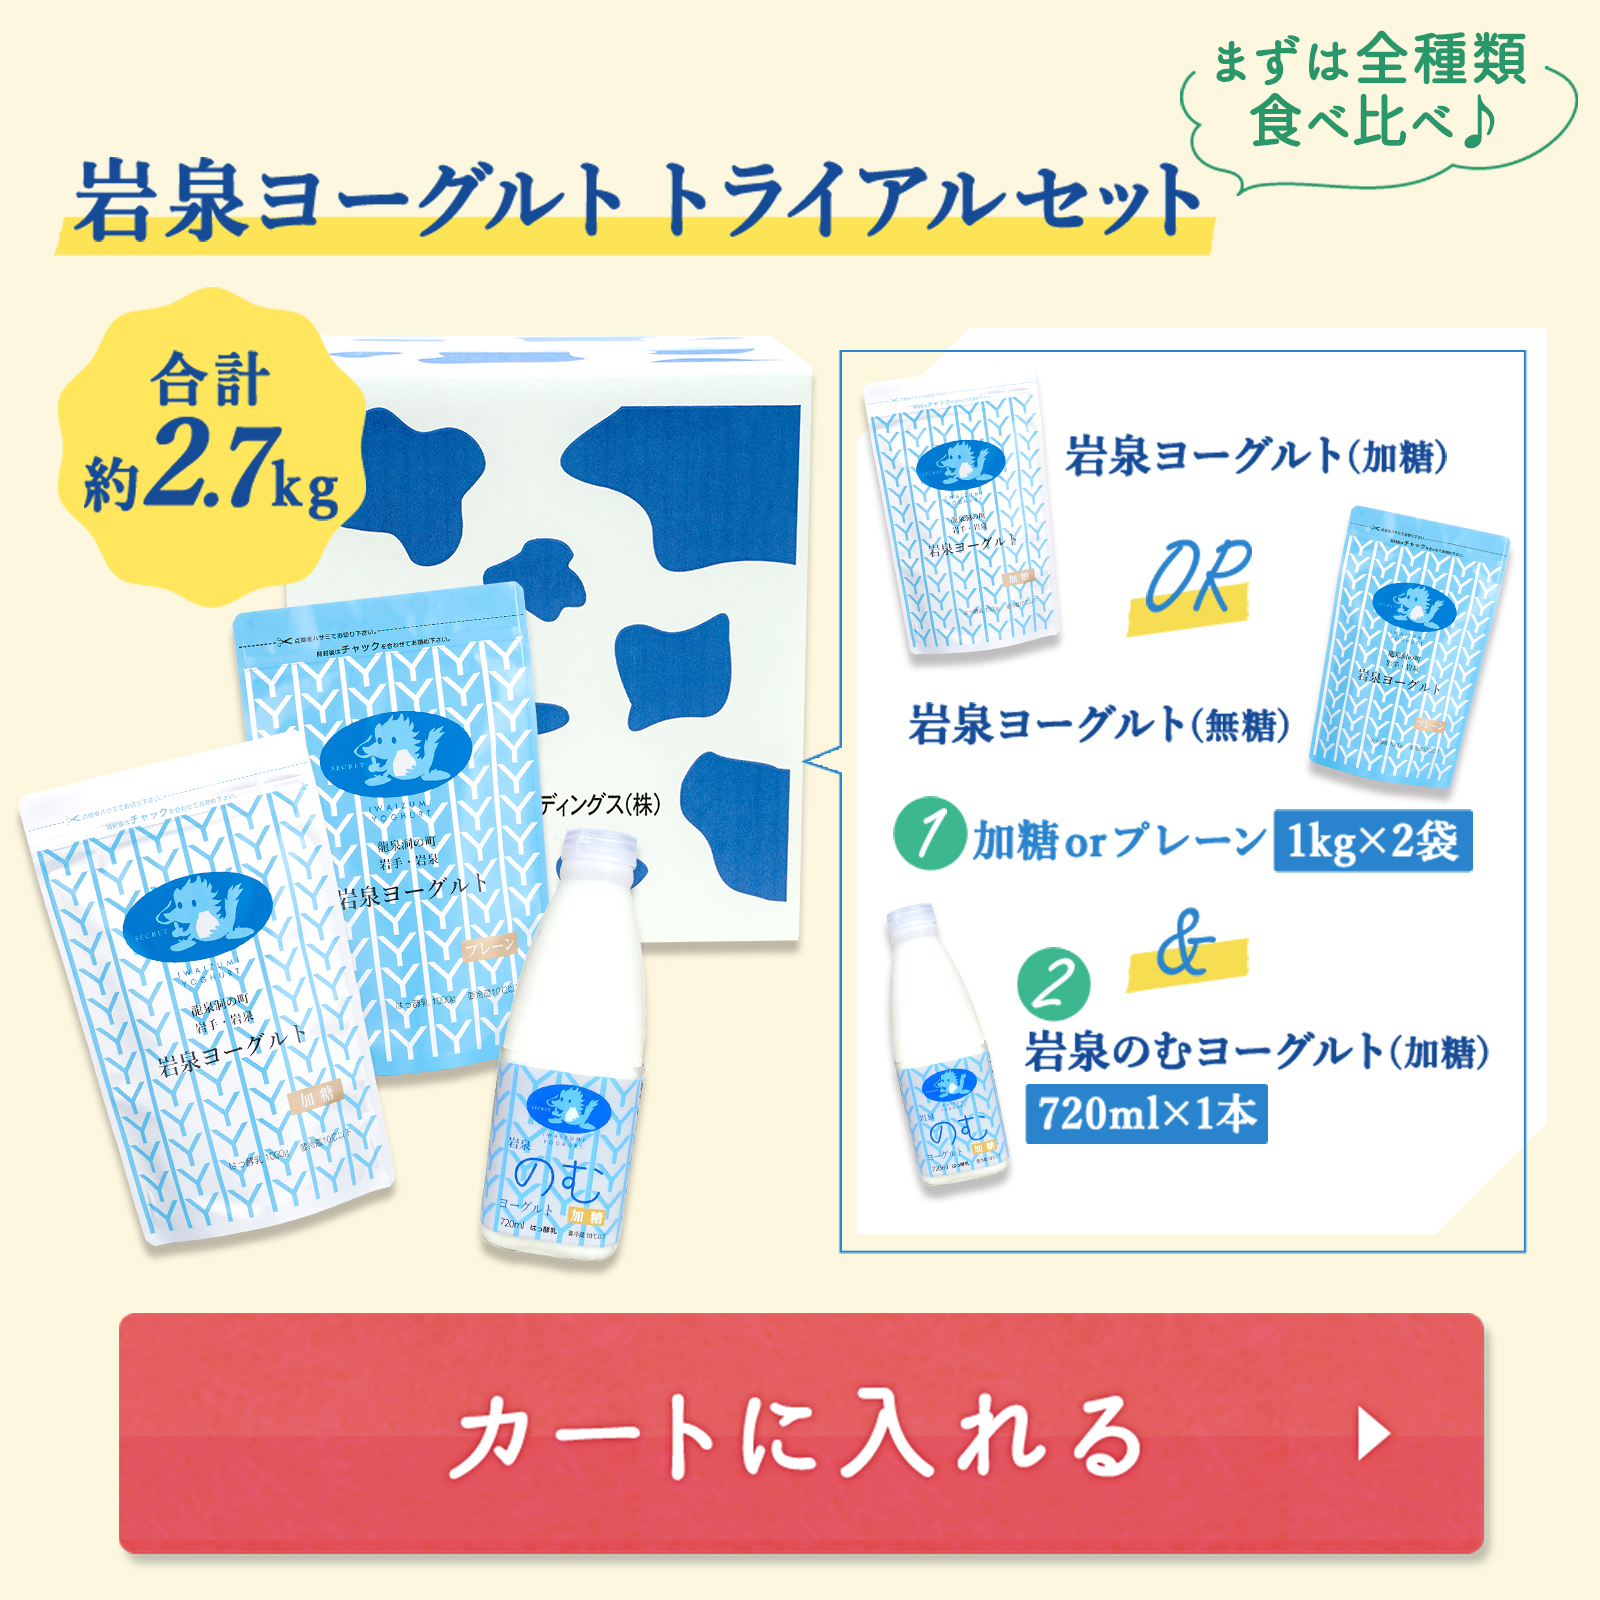  скала Izumi йогурт комплект пробников [. сахар * нет сахар 1kg×2 пакет /. . йогурт 1 шт. ] можно выбрать подарок ваш заказ ассортимент скала ручная работа длина .... прямая поставка от производителя здоровье 